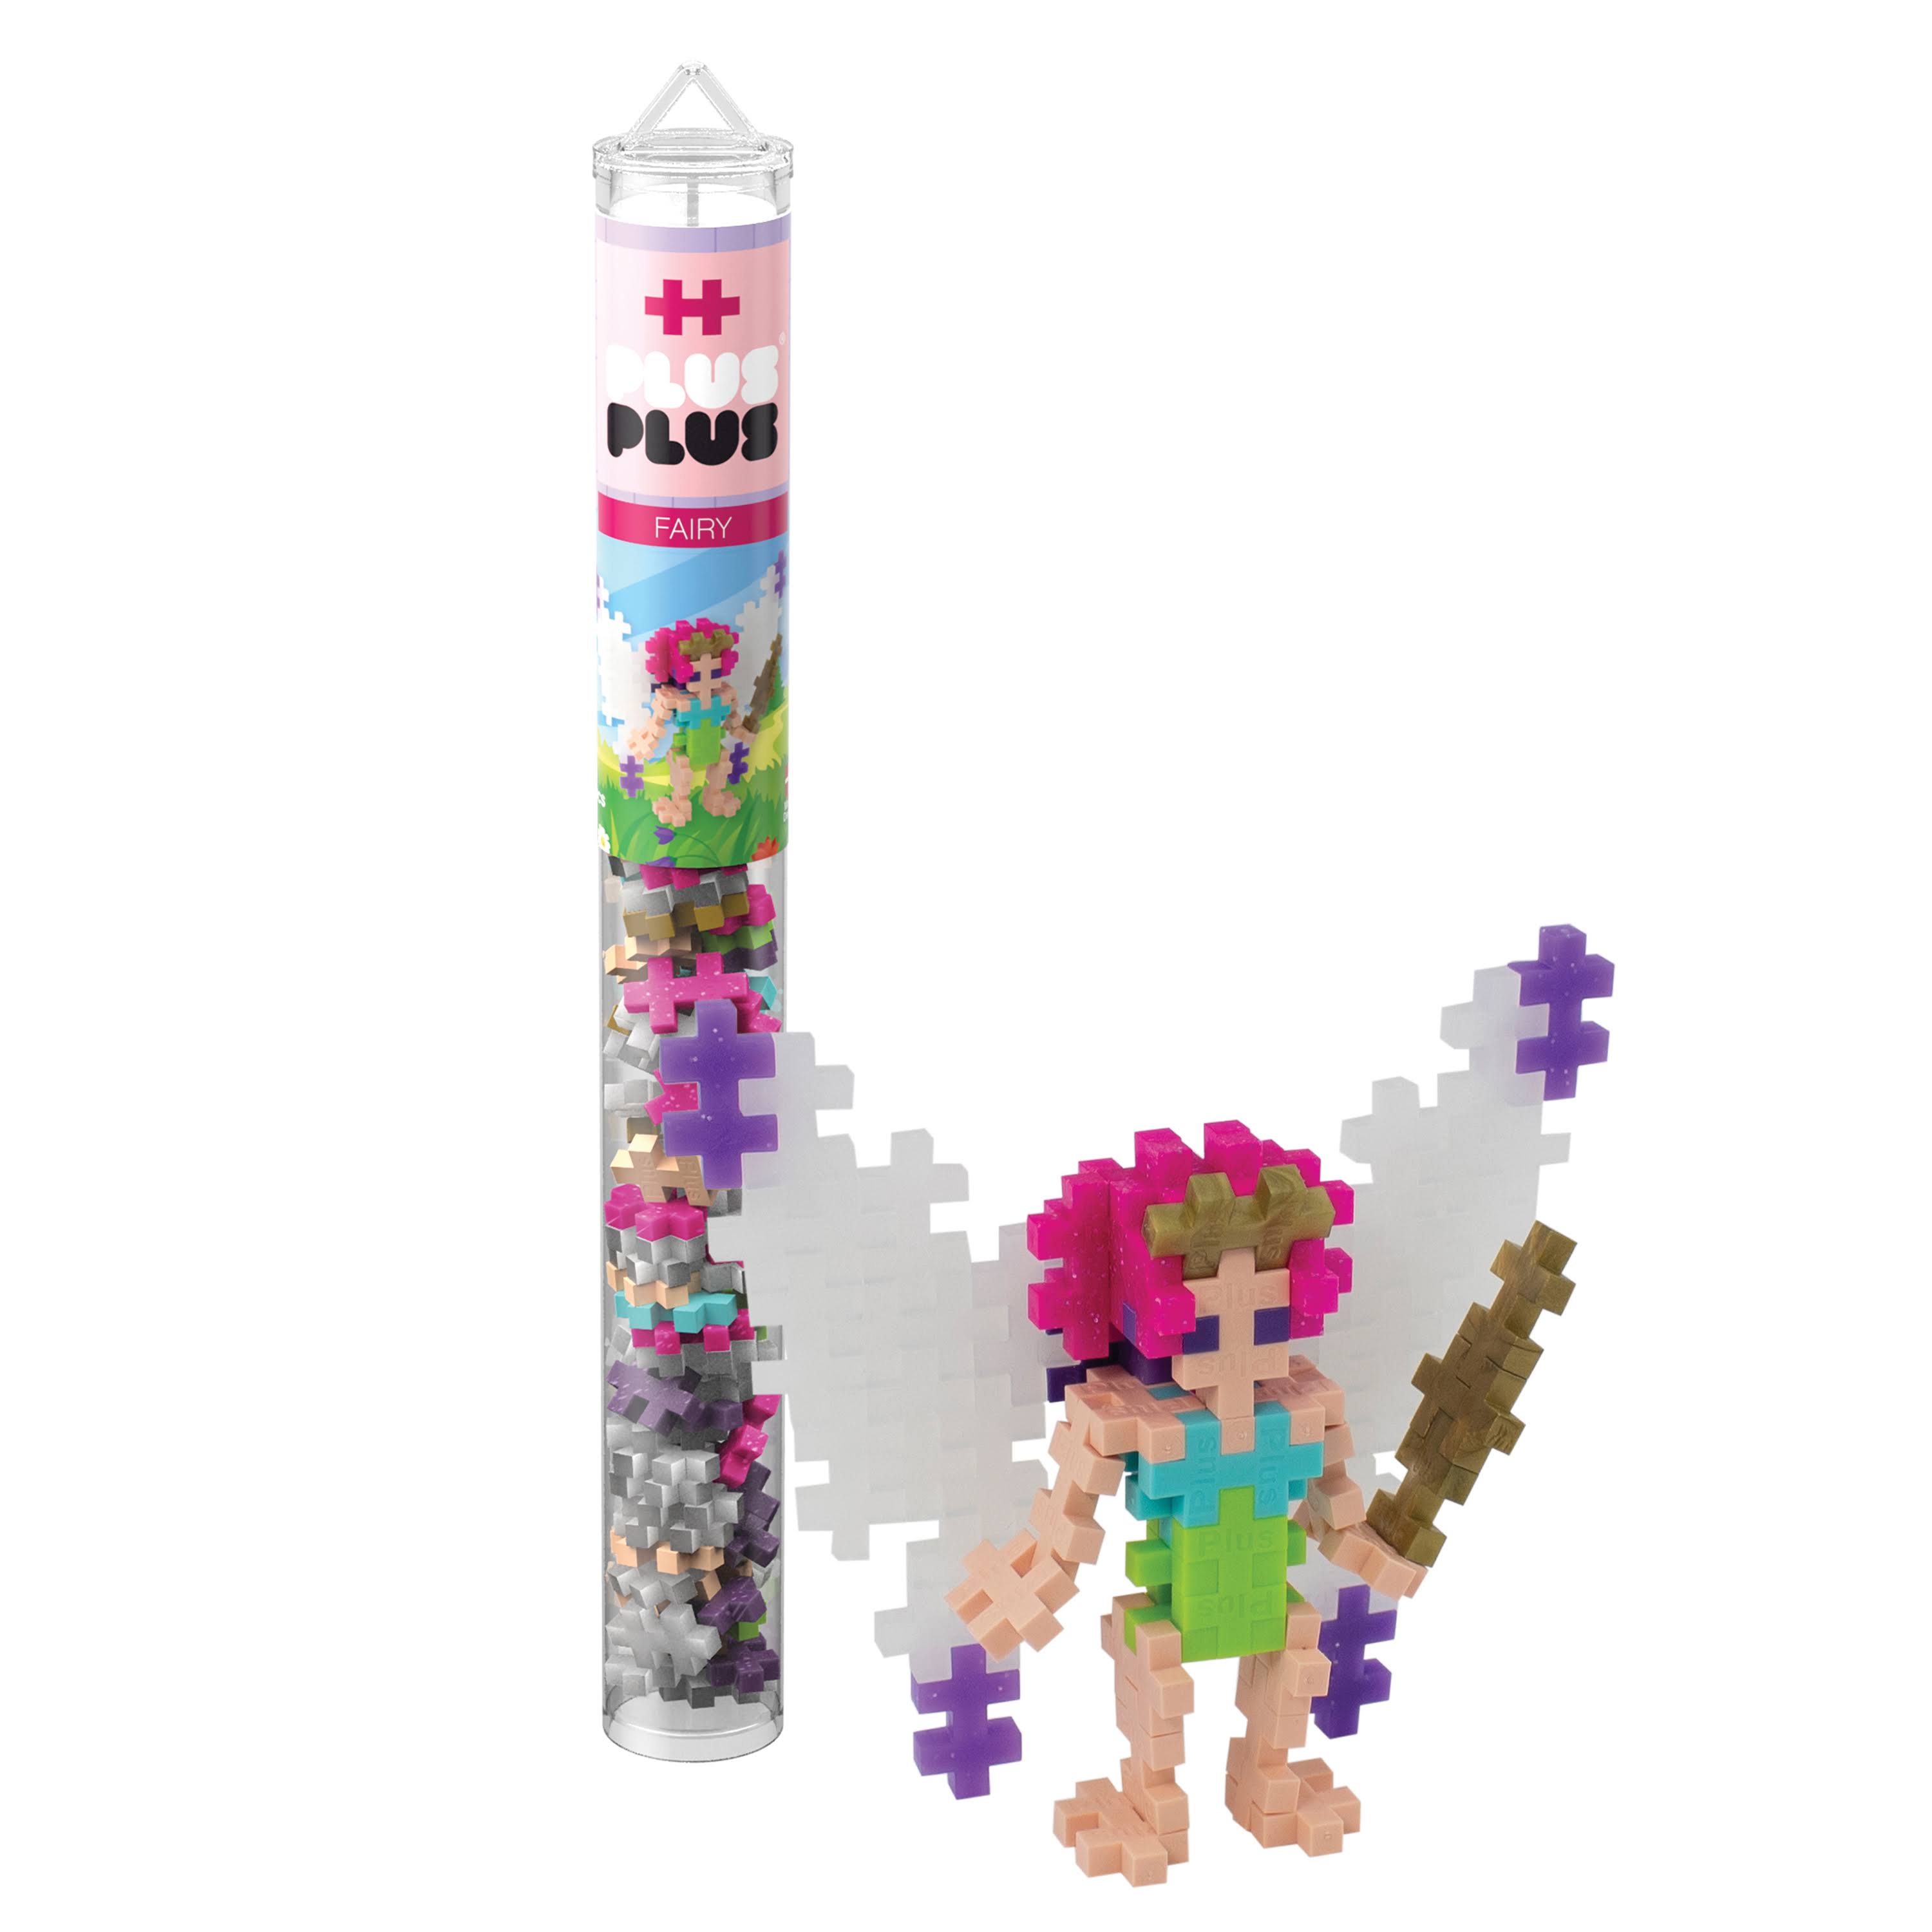 Plus Plus - Fairy - 70 Piece Tube, Construction Building Stem/Steam Toy, Mini Puzzle Blocks For Kids